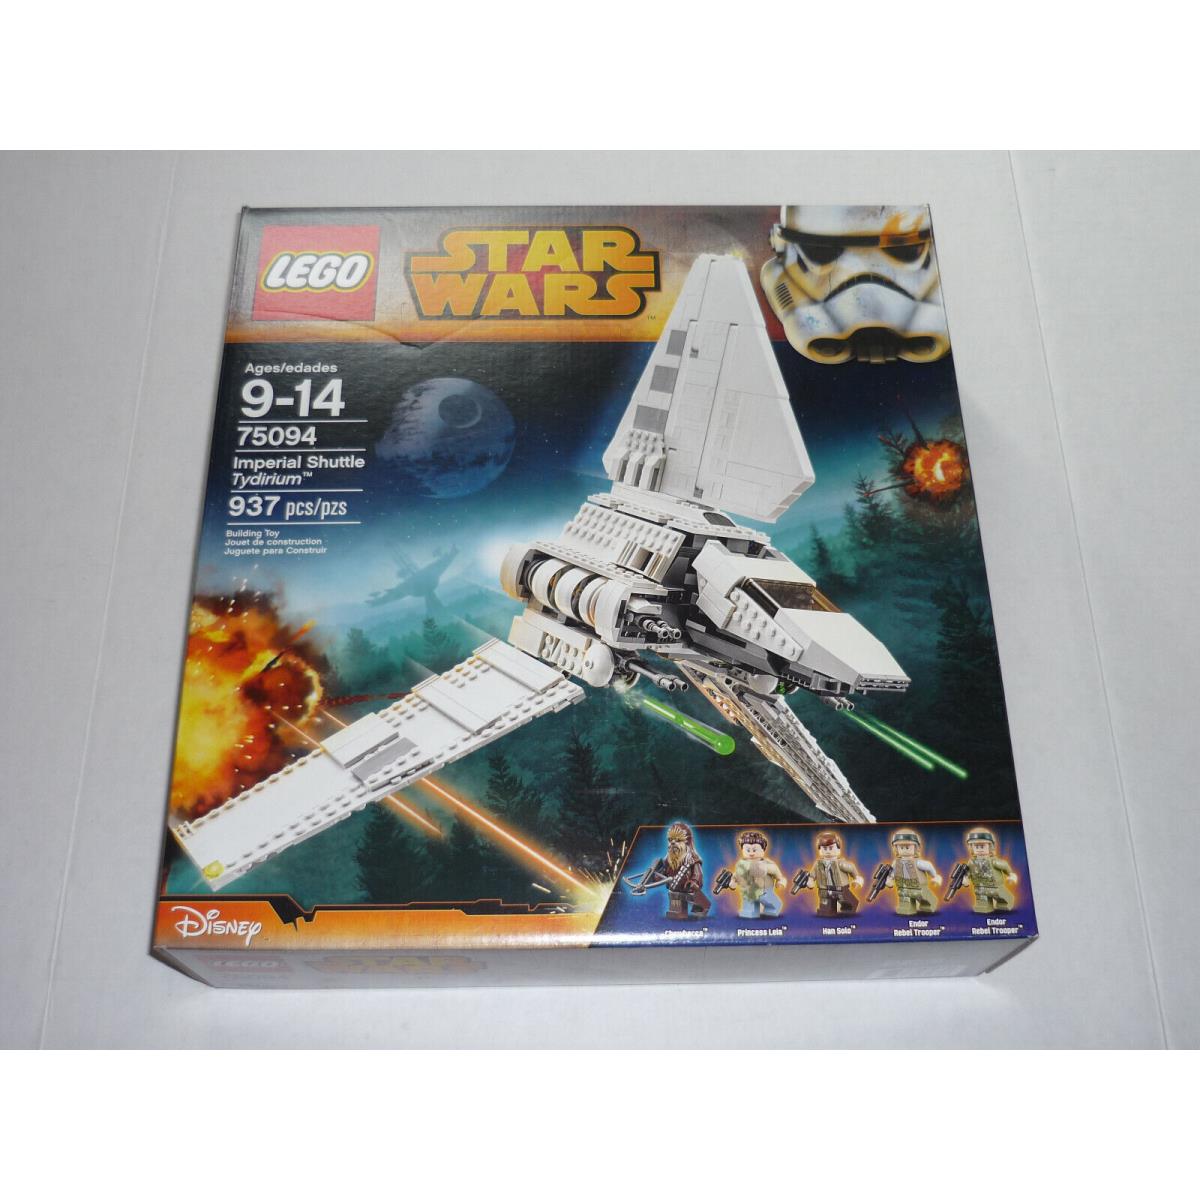 Lego 75094 Star Wars Imperial Shuttle Tydirium Mib